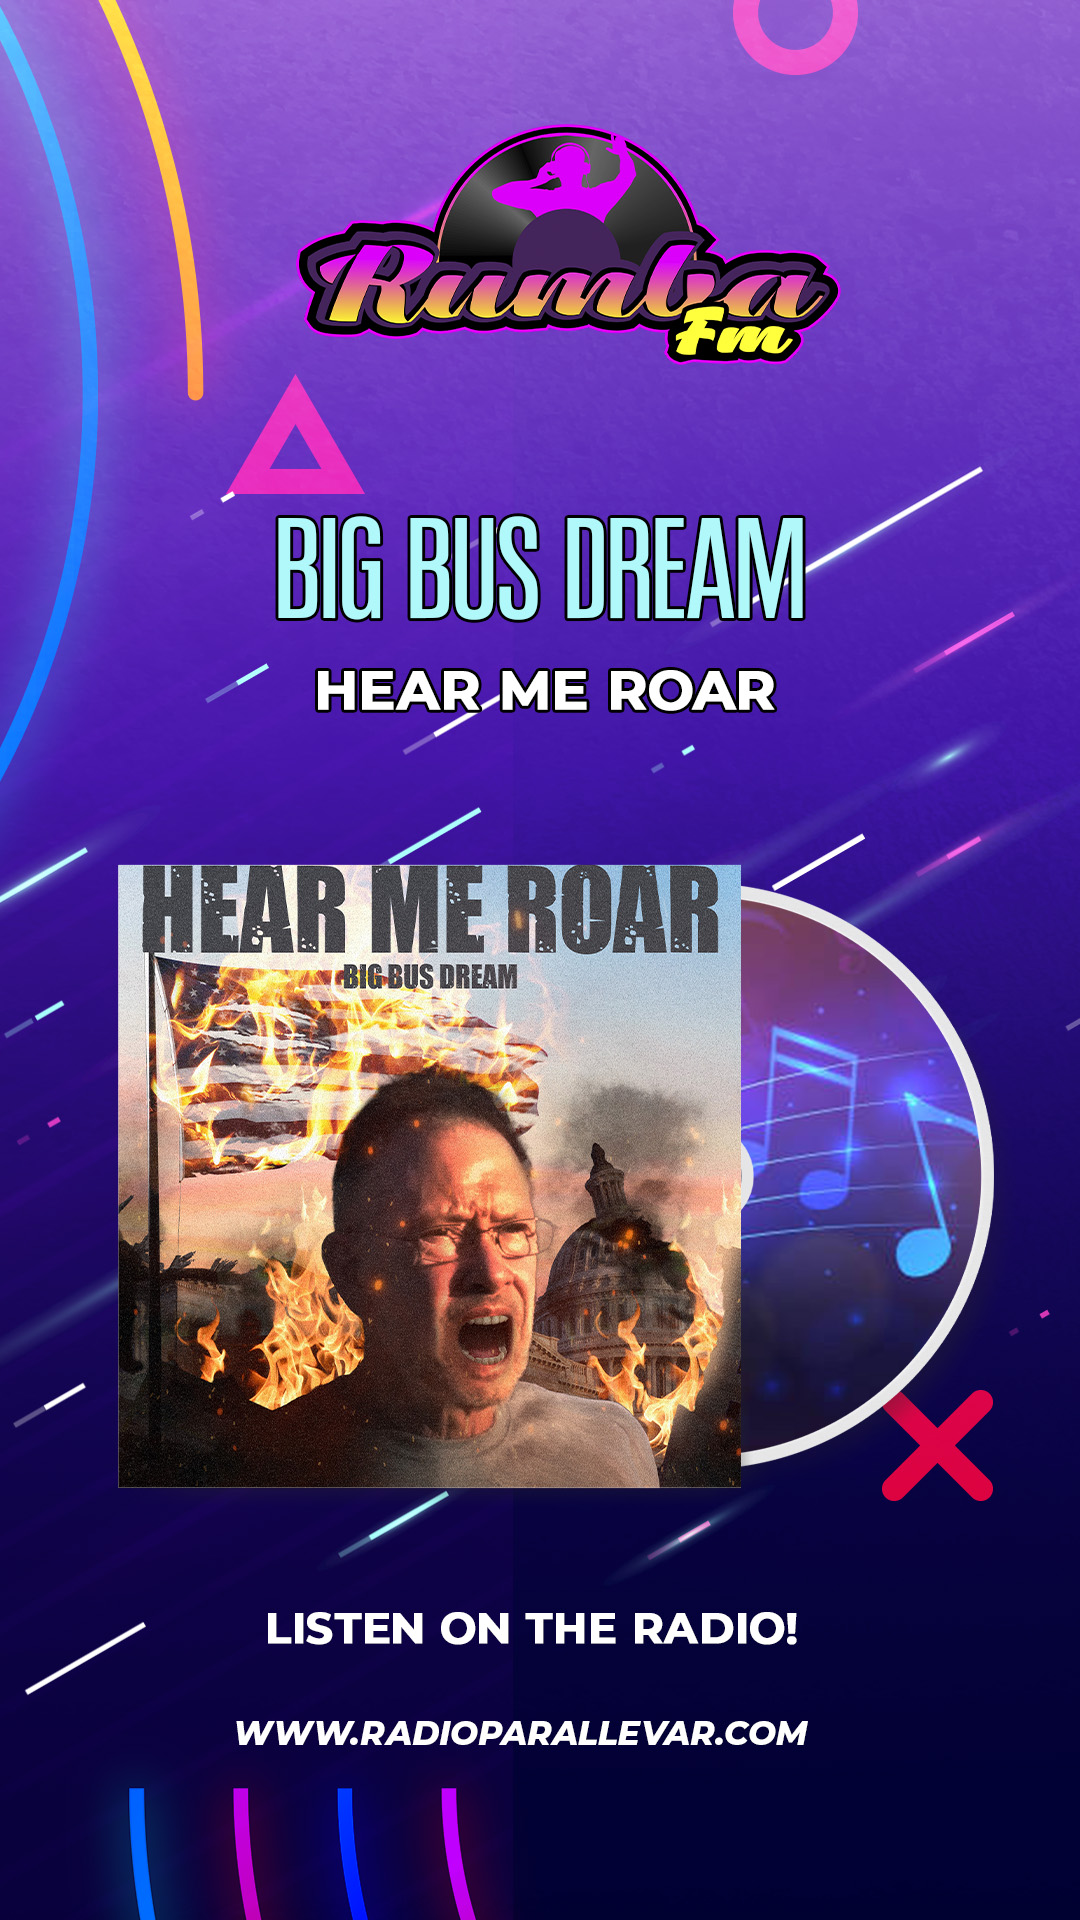 Hear Me Roar as heard on Rumba FM - the broadcast is featured